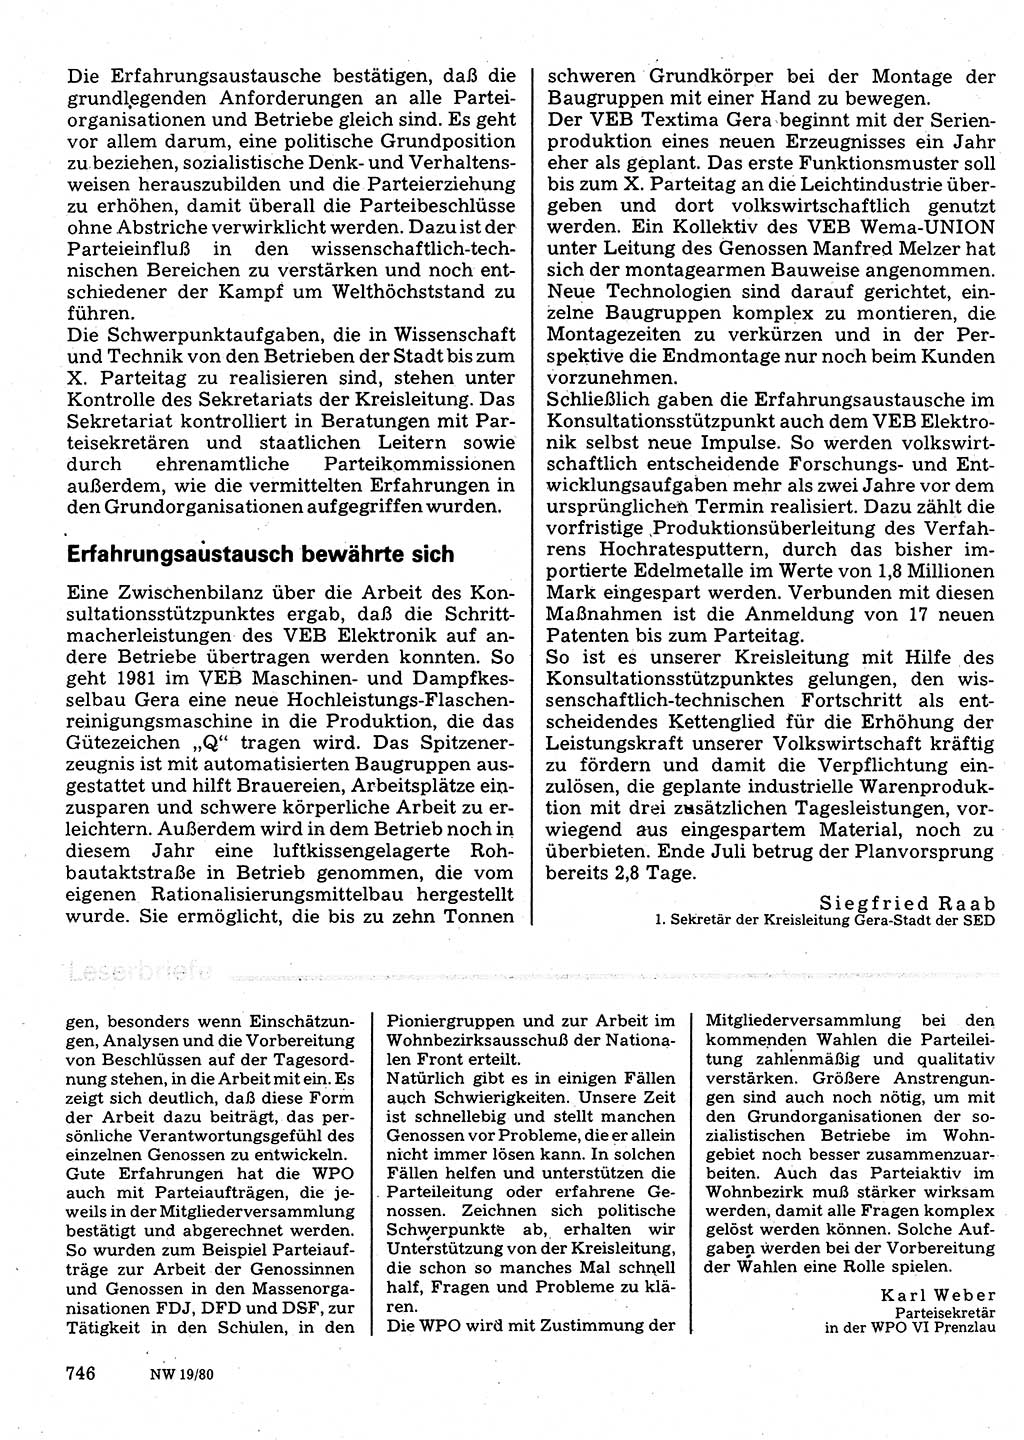 Neuer Weg (NW), Organ des Zentralkomitees (ZK) der SED (Sozialistische Einheitspartei Deutschlands) für Fragen des Parteilebens, 35. Jahrgang [Deutsche Demokratische Republik (DDR)] 1980, Seite 746 (NW ZK SED DDR 1980, S. 746)